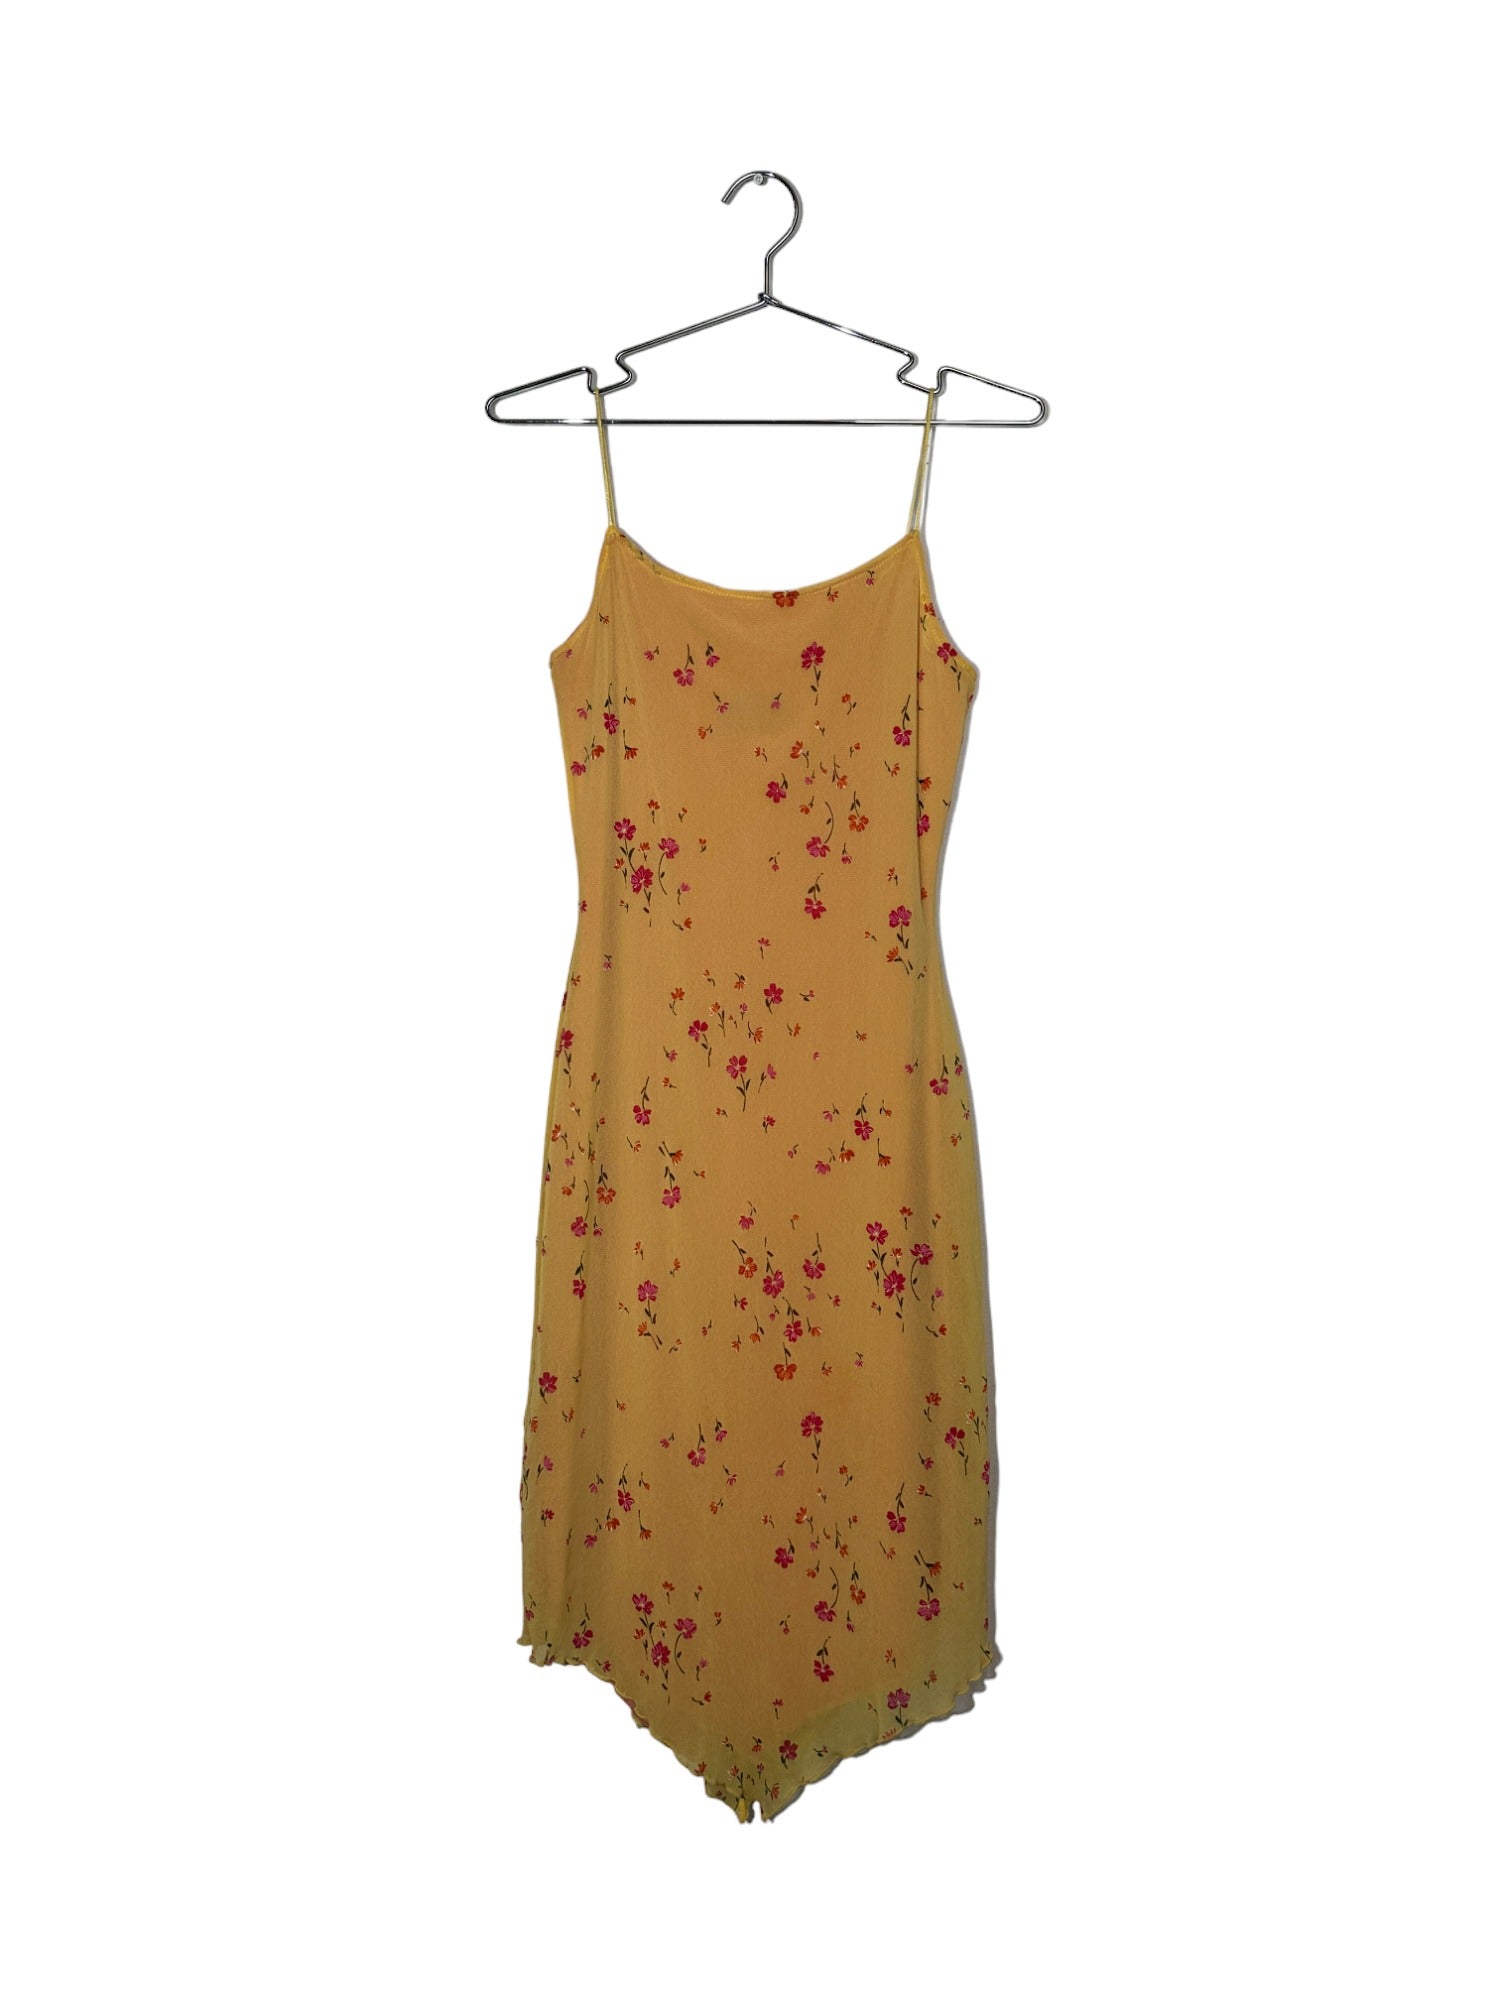 Copy of Vintage Lace Drop Waist Dress